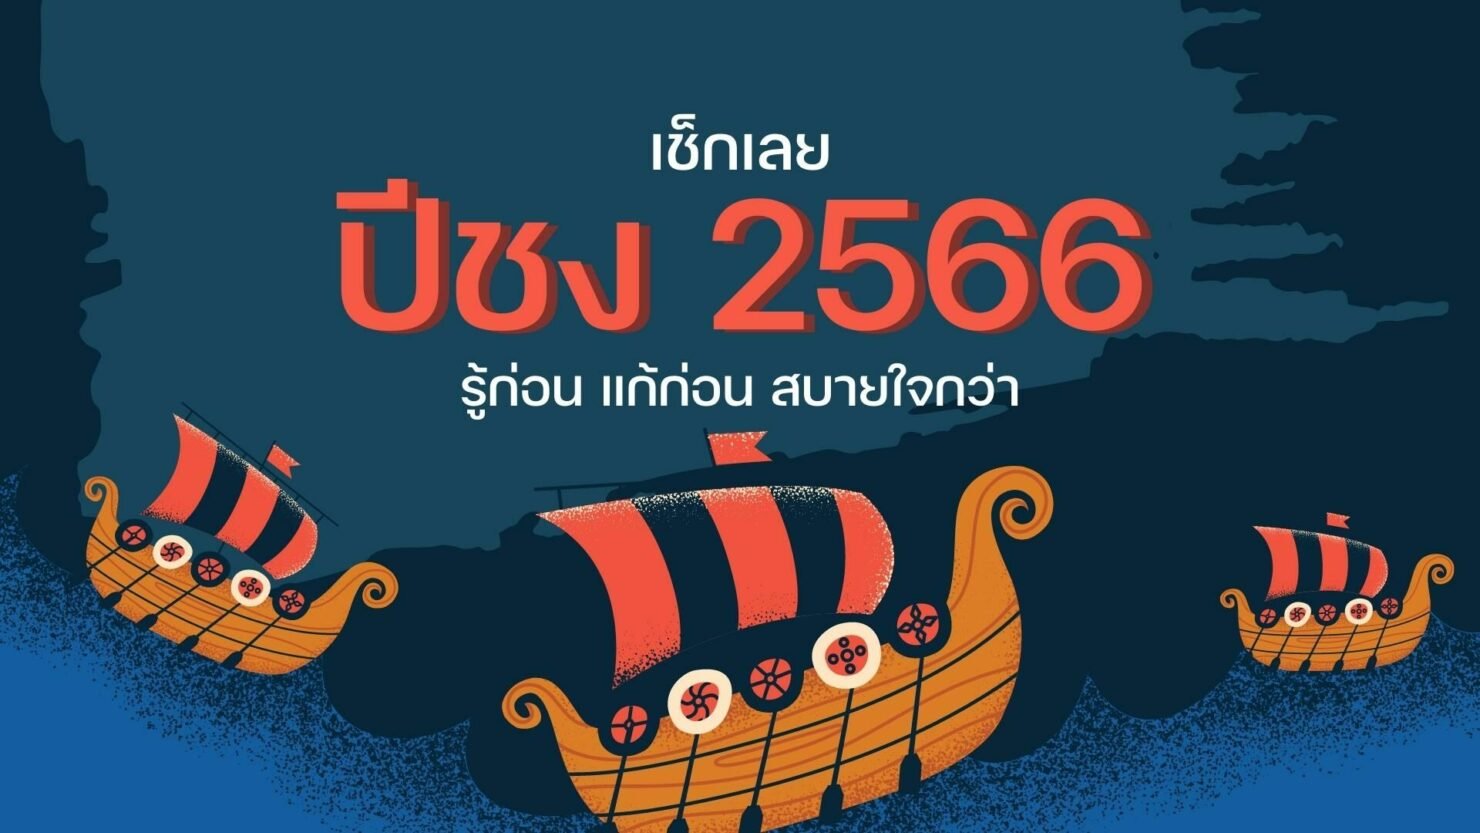 เช็กด่วน 'ปีชง 2566' ปีไหนชงแรง พร้อมวิธีแก้ชง ปัดเป่าโชคร้ายรับปีเถาะ |  Thaiger ข่าวไทย